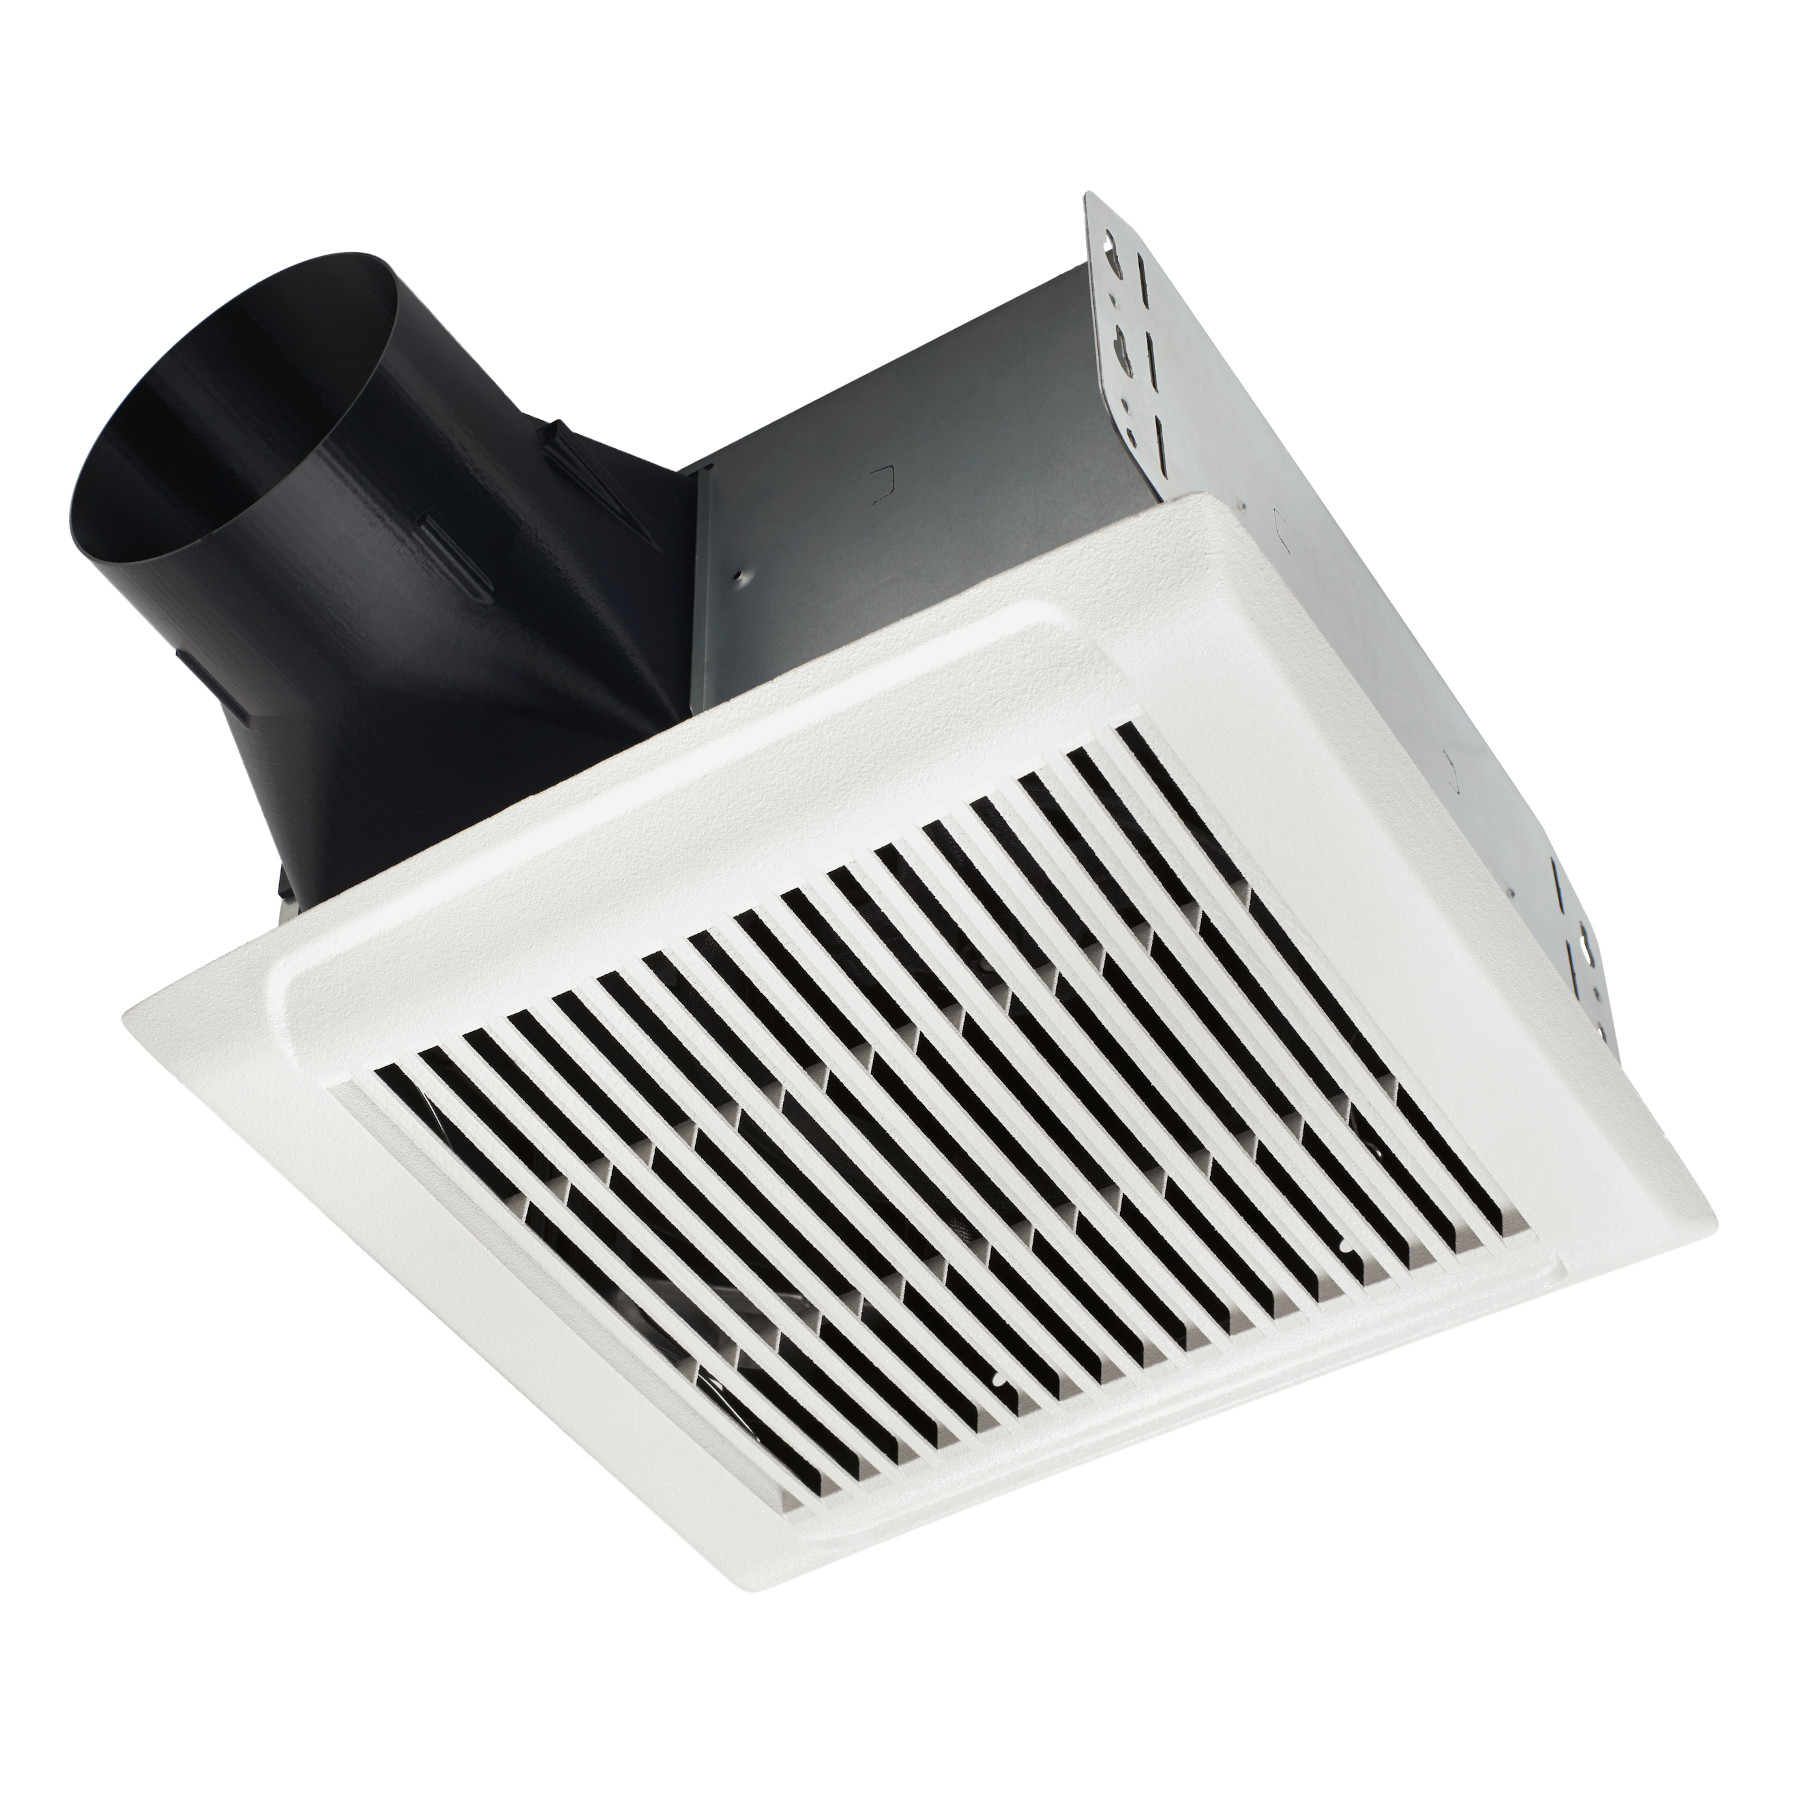 NuTone®80 CFM Ventilation Fan, 1.5 Sones; ENERGY STAR Certified